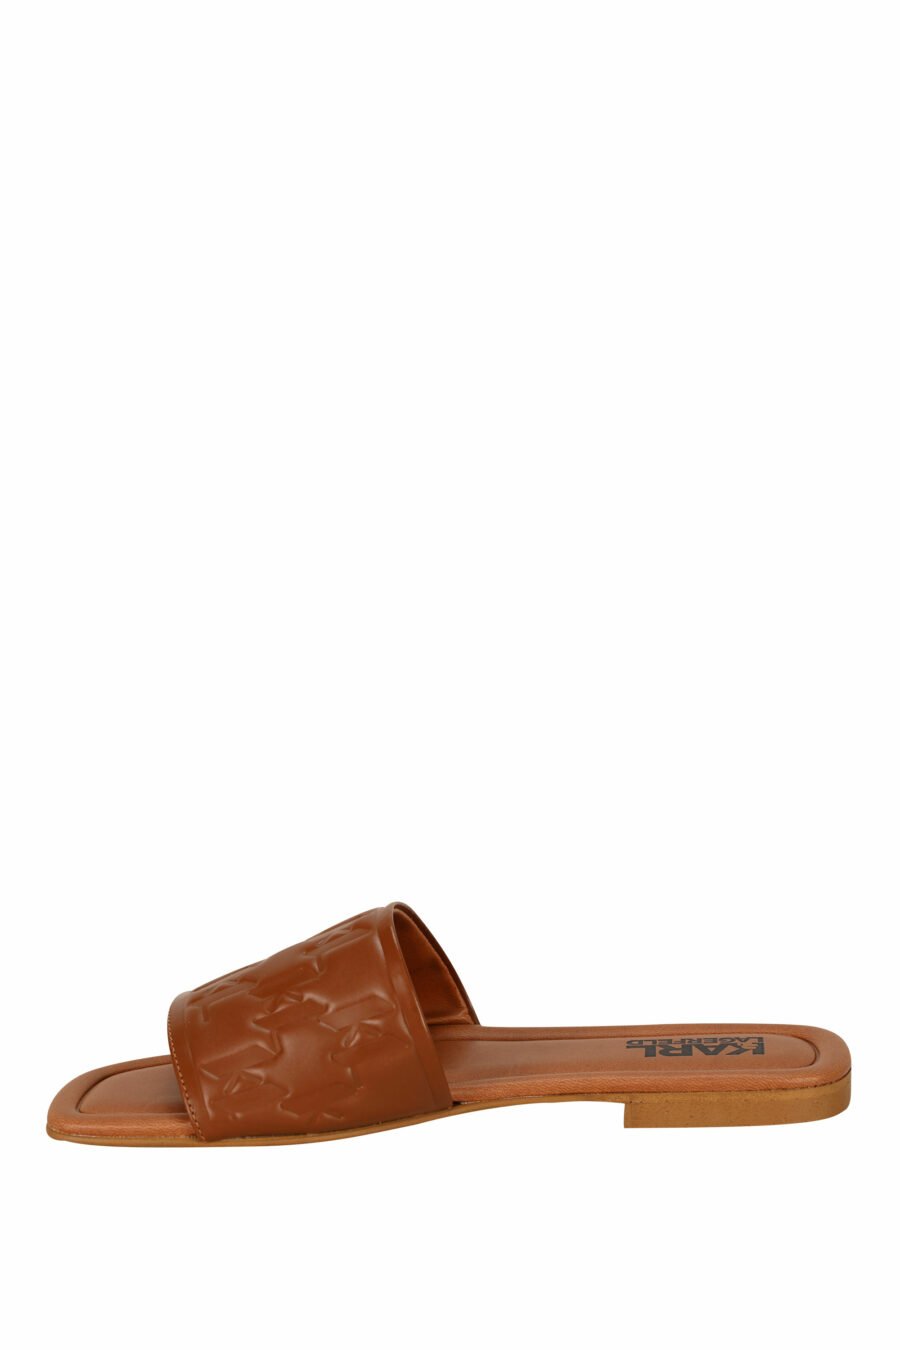 Sandales en cuir marron avec logo monogramme - 5059529404191 2